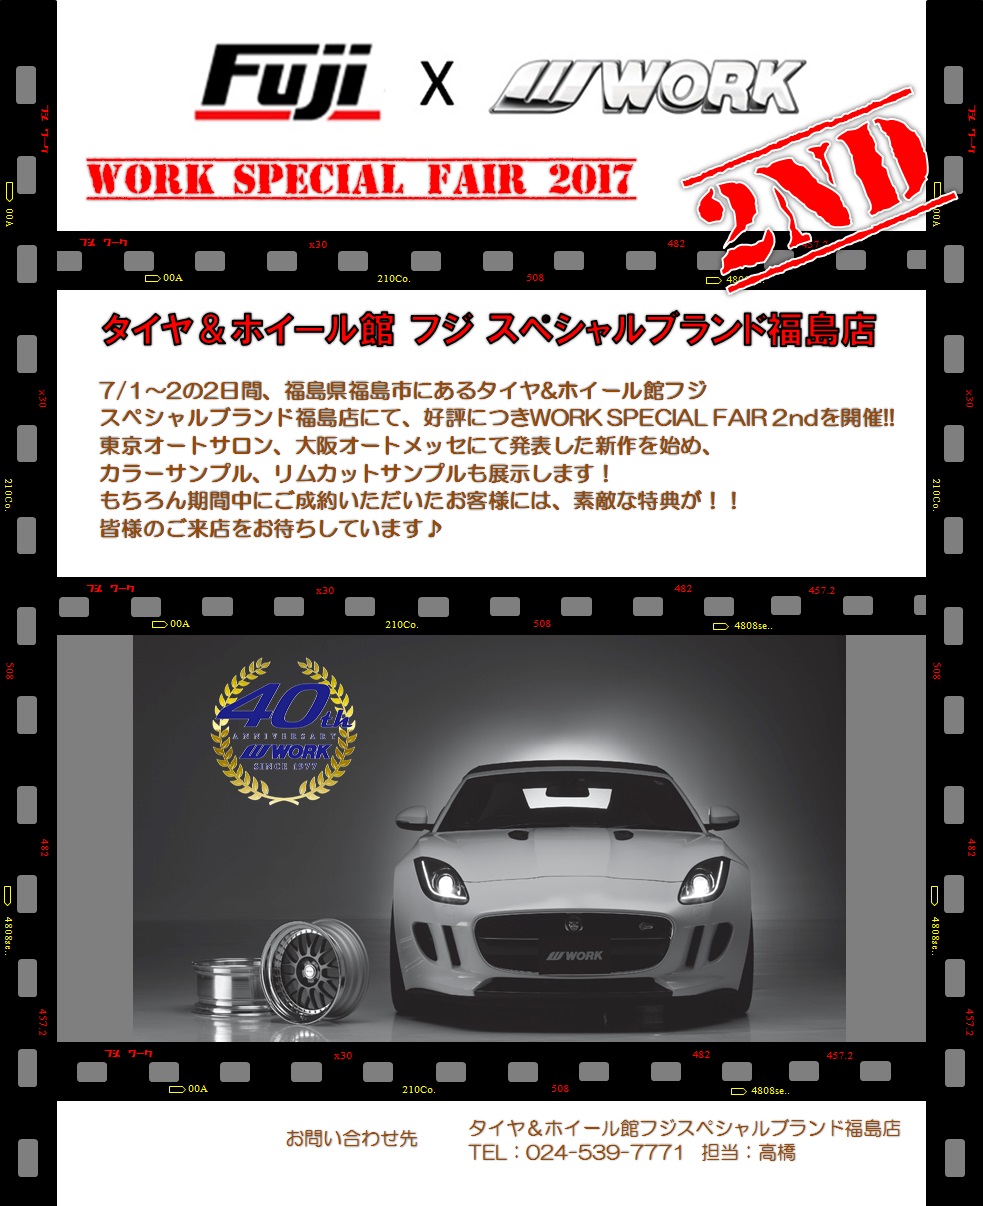 WORK SPECIAL FAIR 2017 in Fuji Special Brand Fukushima Store